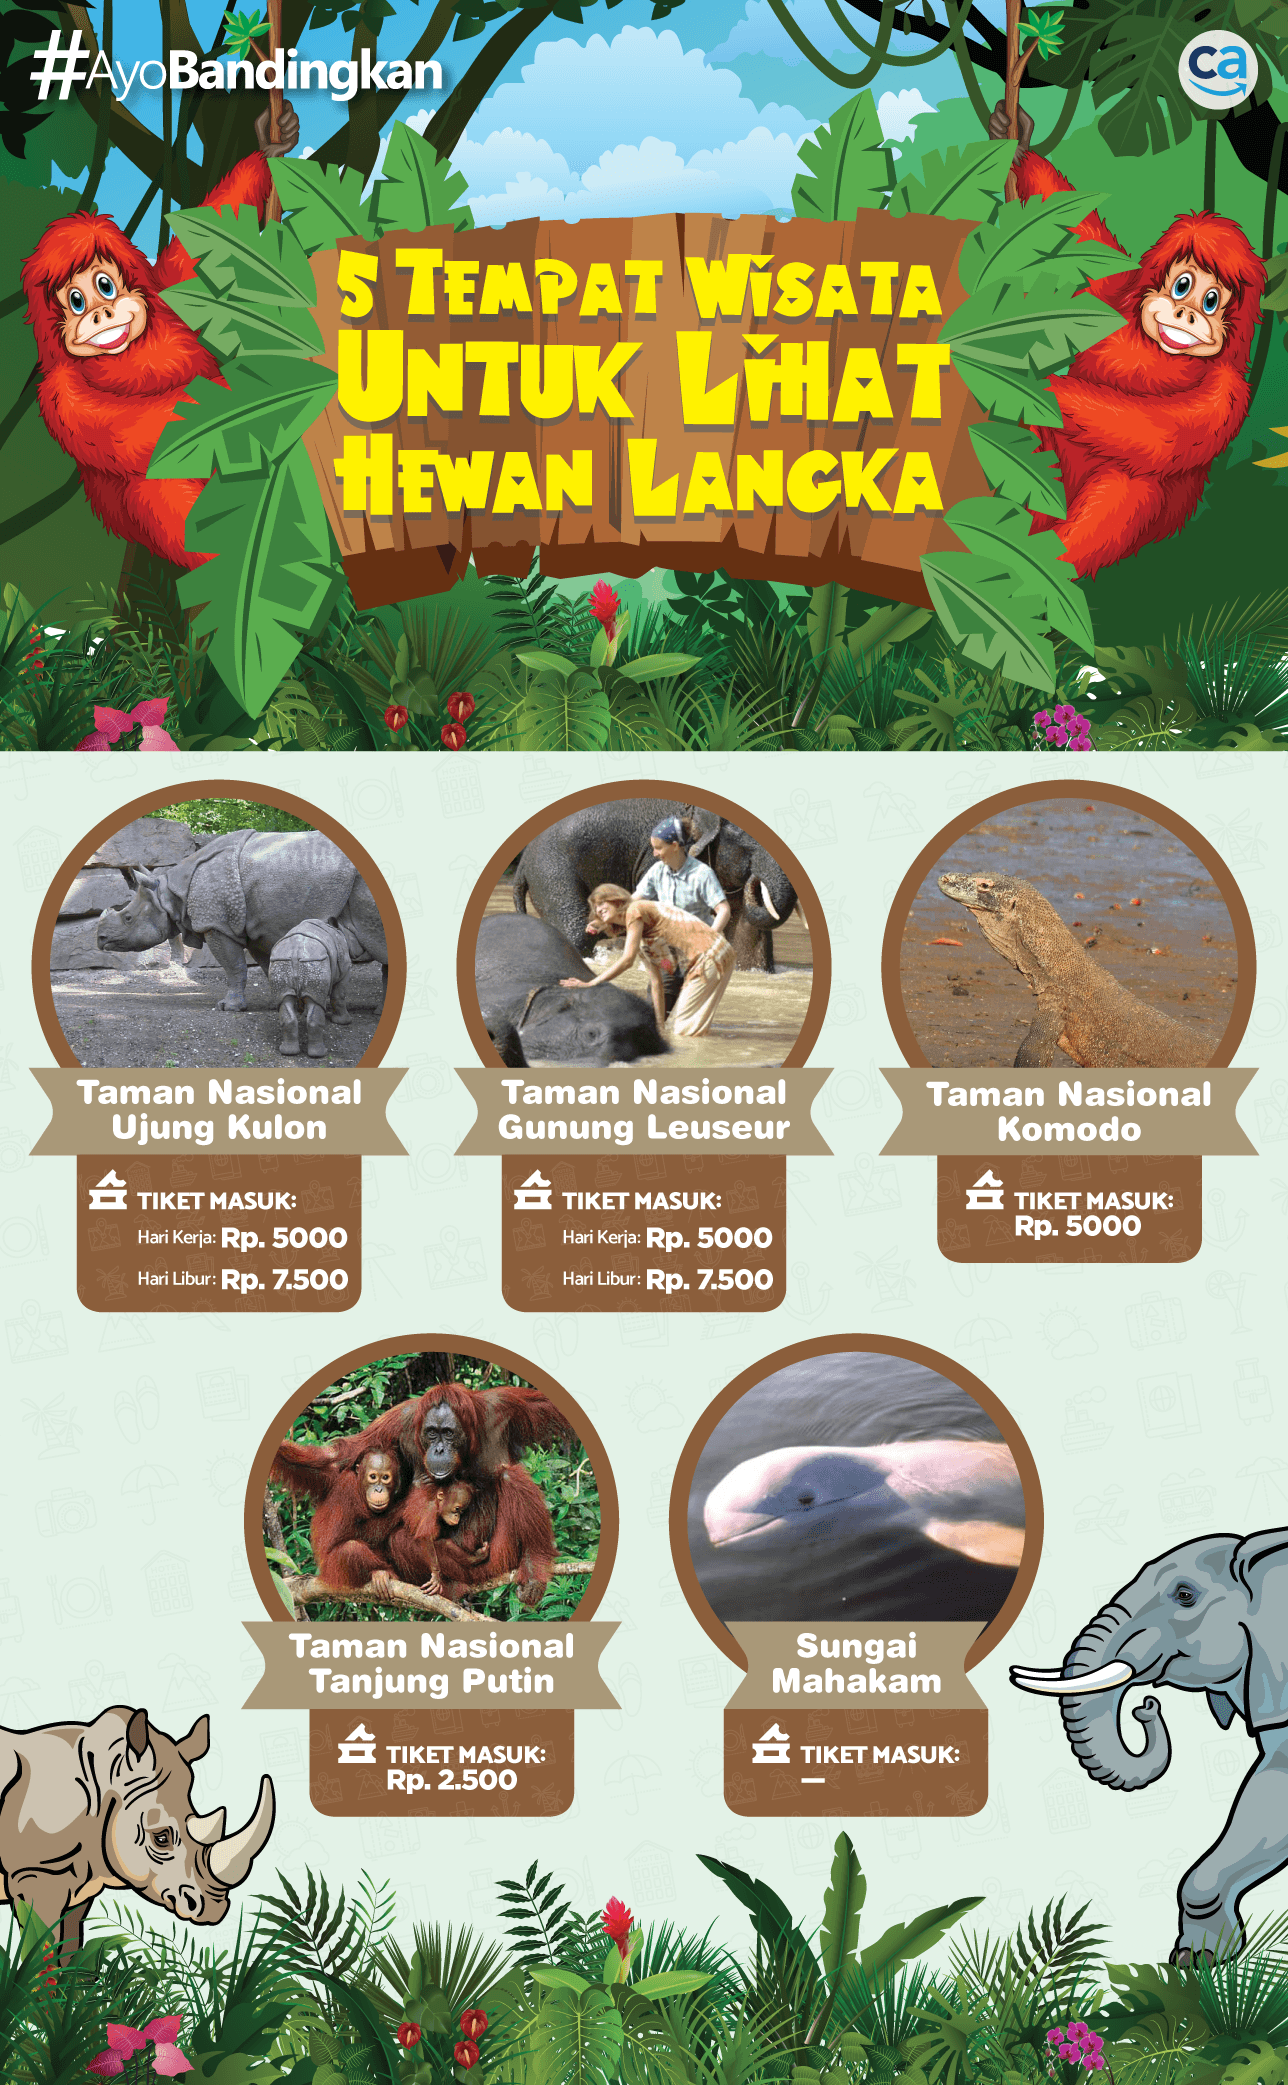 Ongkos untuk Lihat Hewan Langka di Indonesia